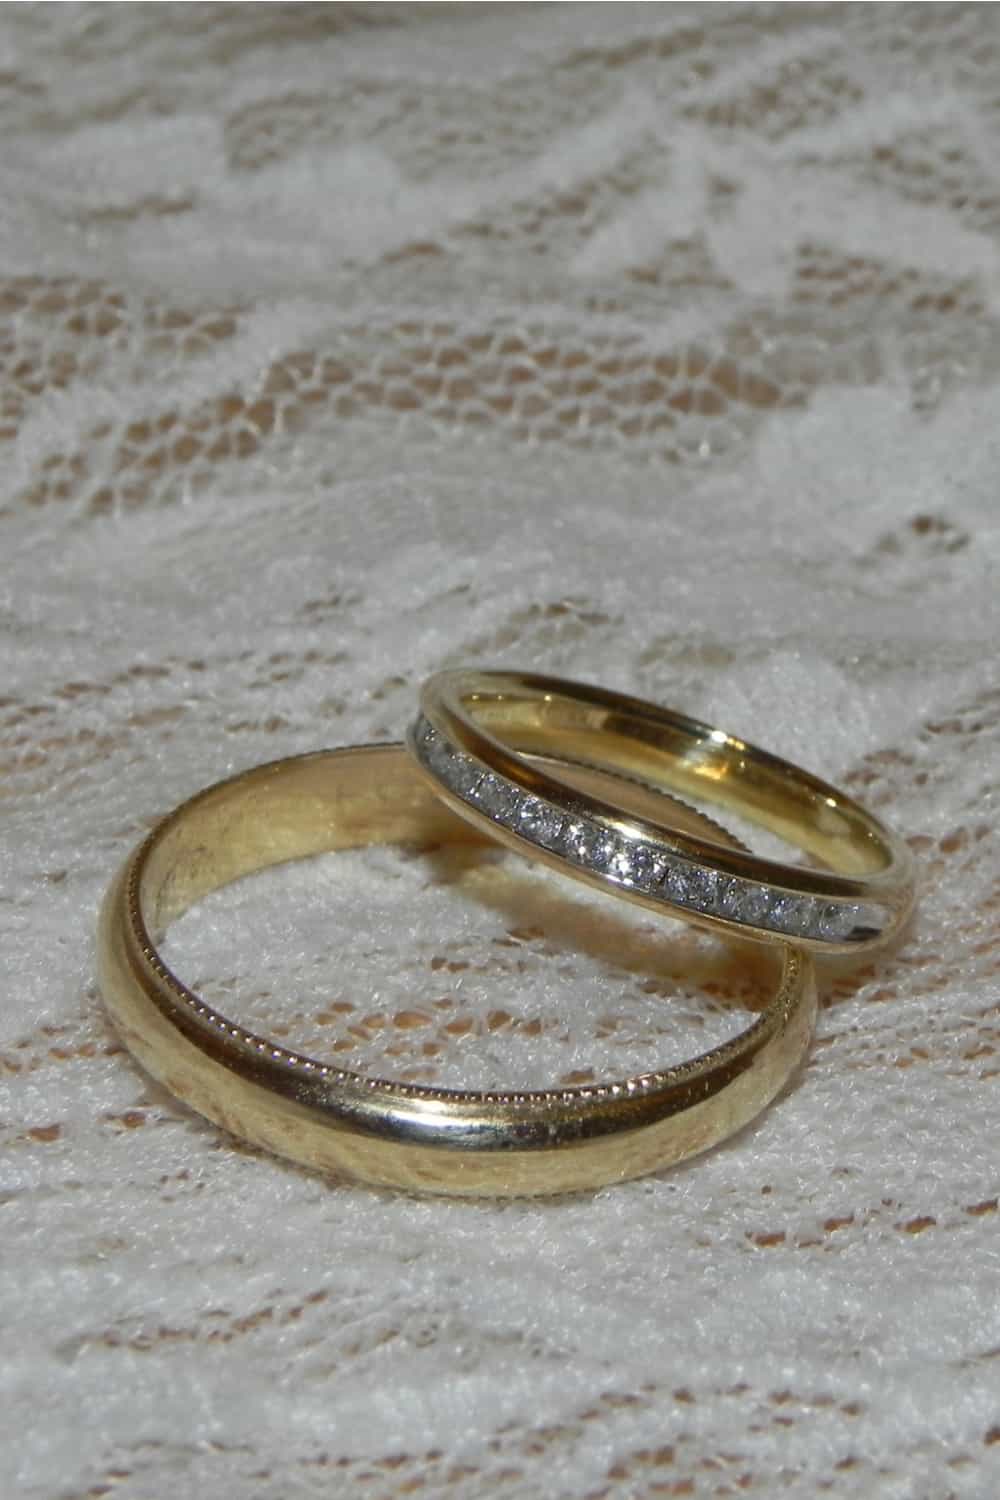 Family heirloom Ring